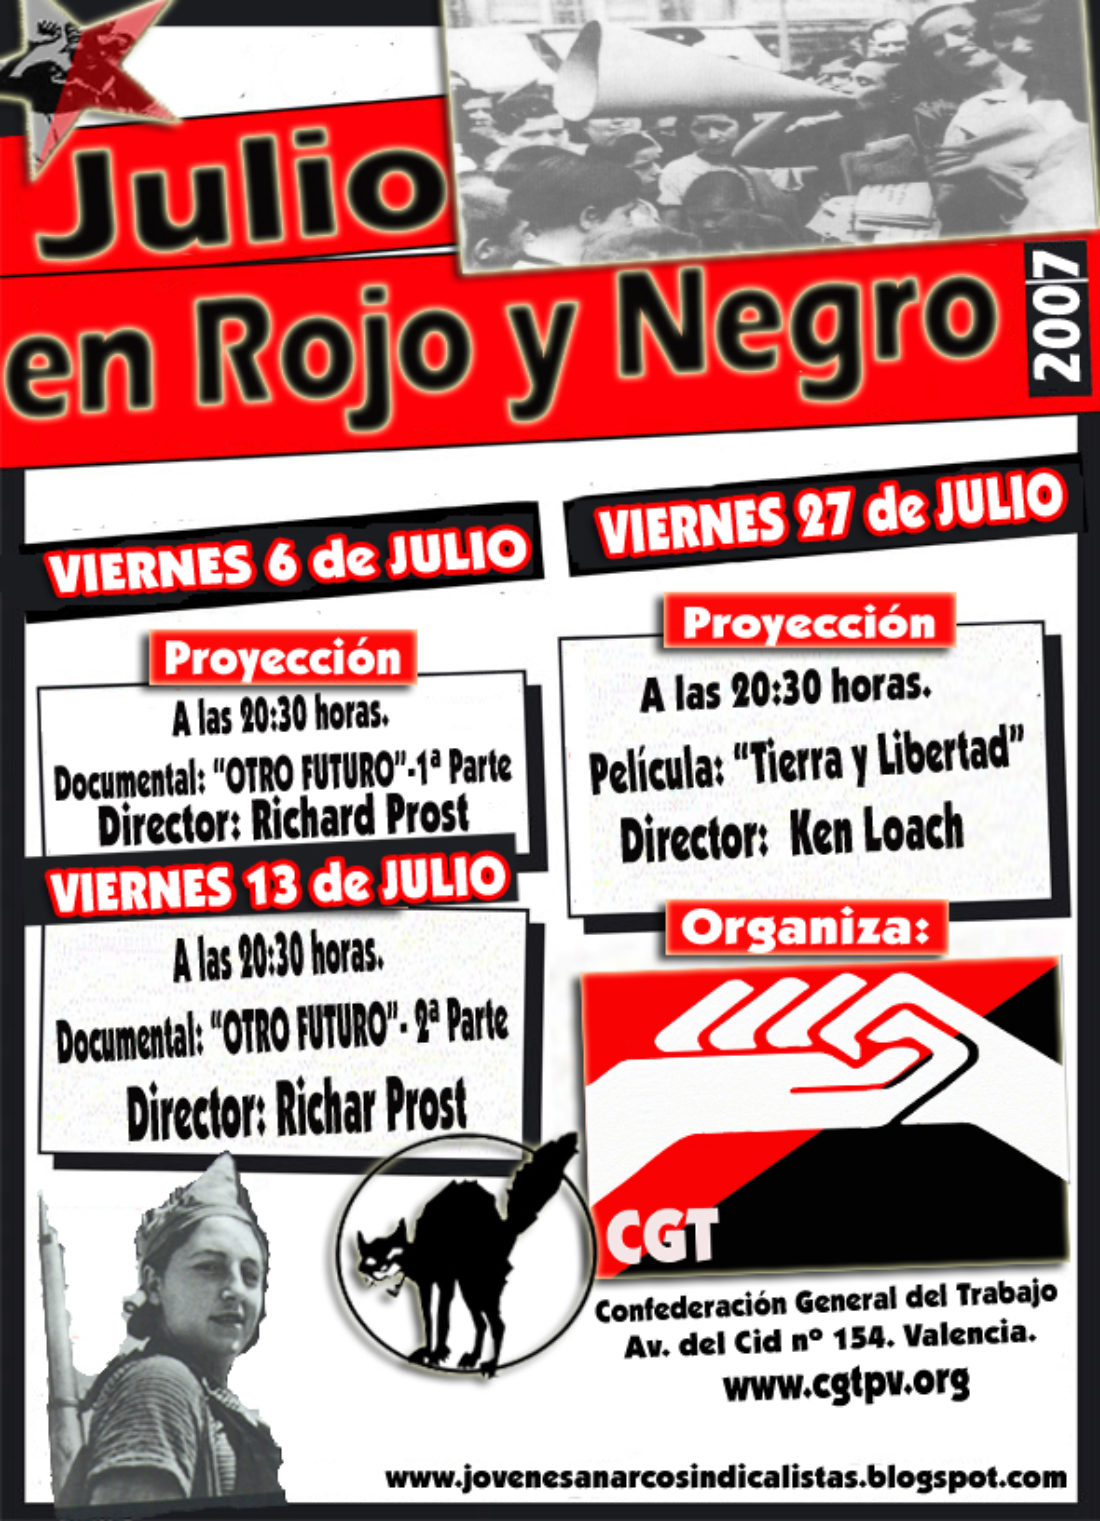 CGT Valencia : julio en rojo y negro 2007